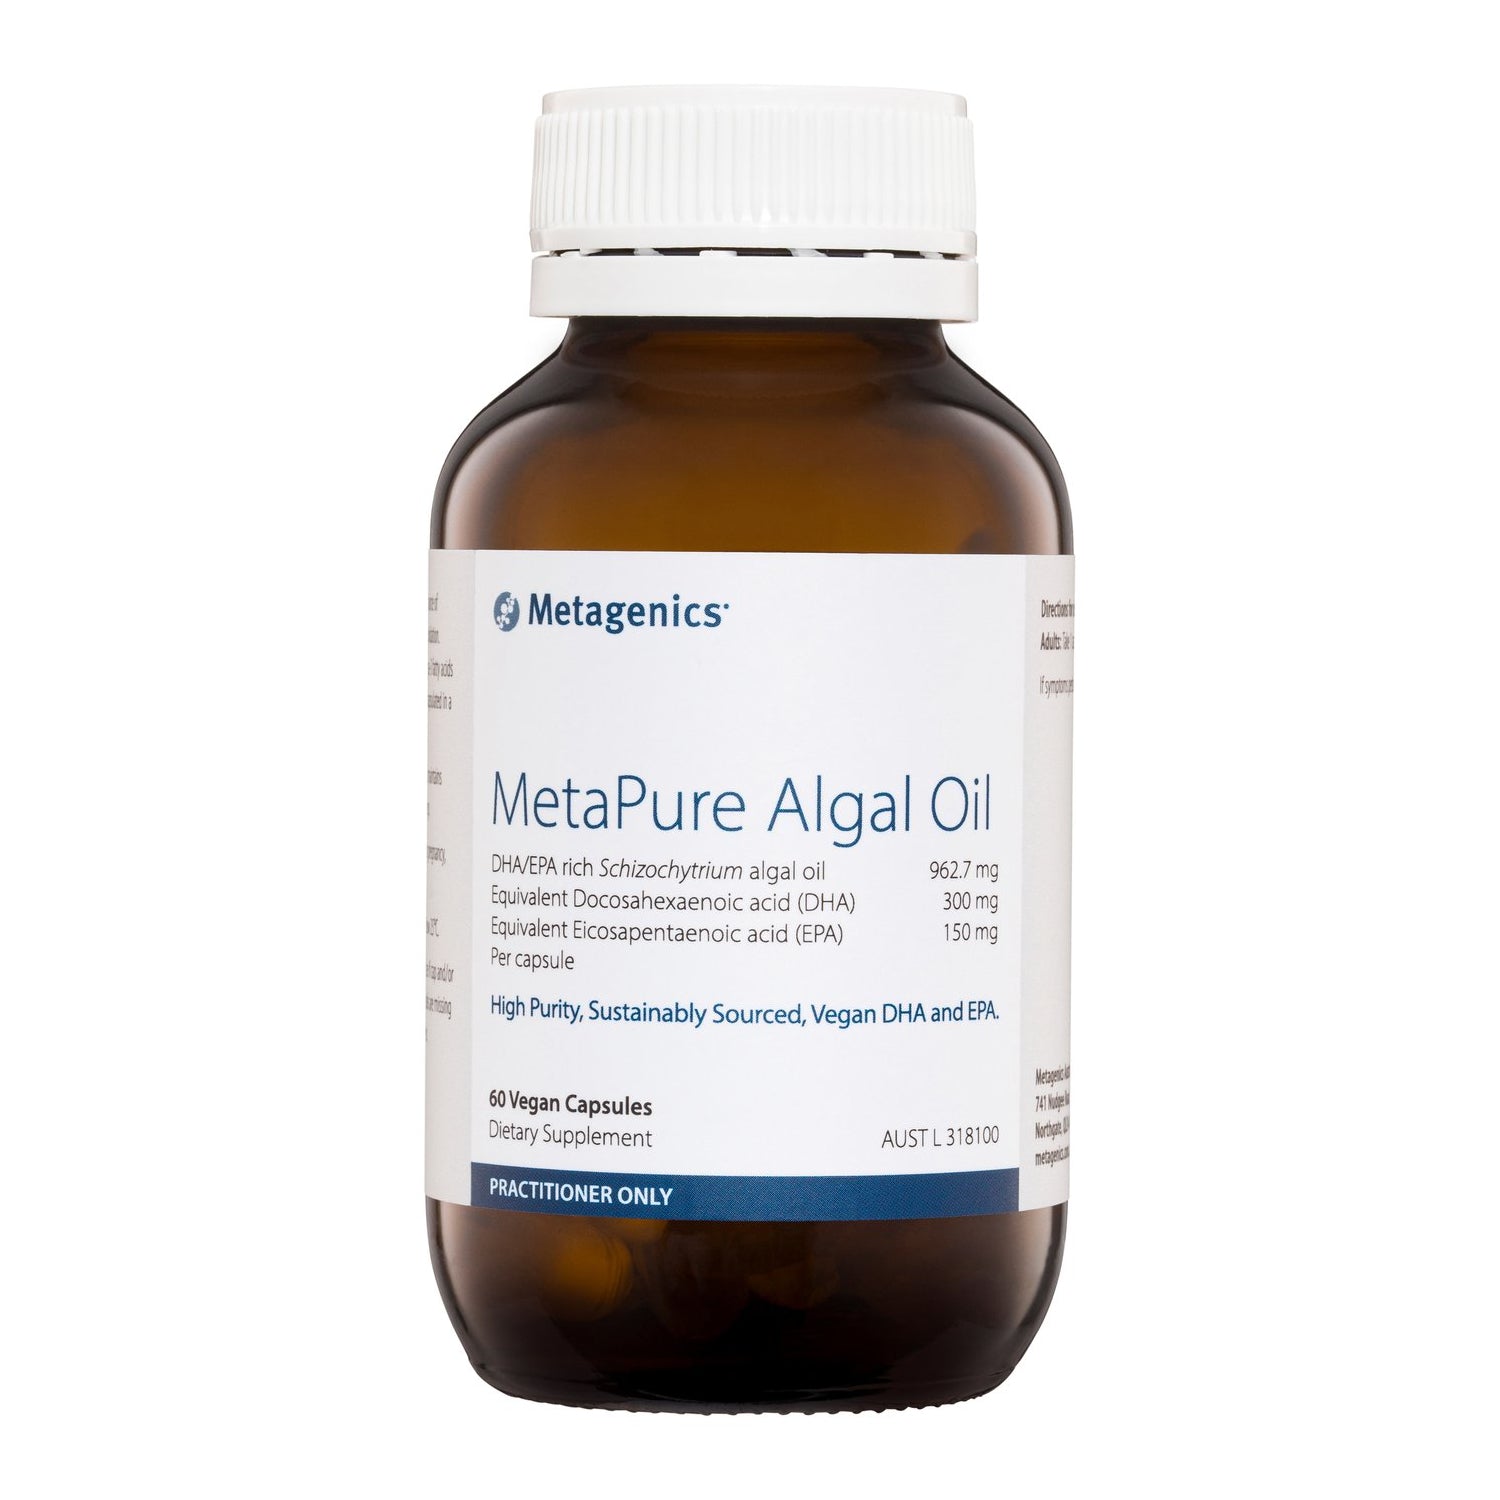 Metagenics MetaPure Algal Oil